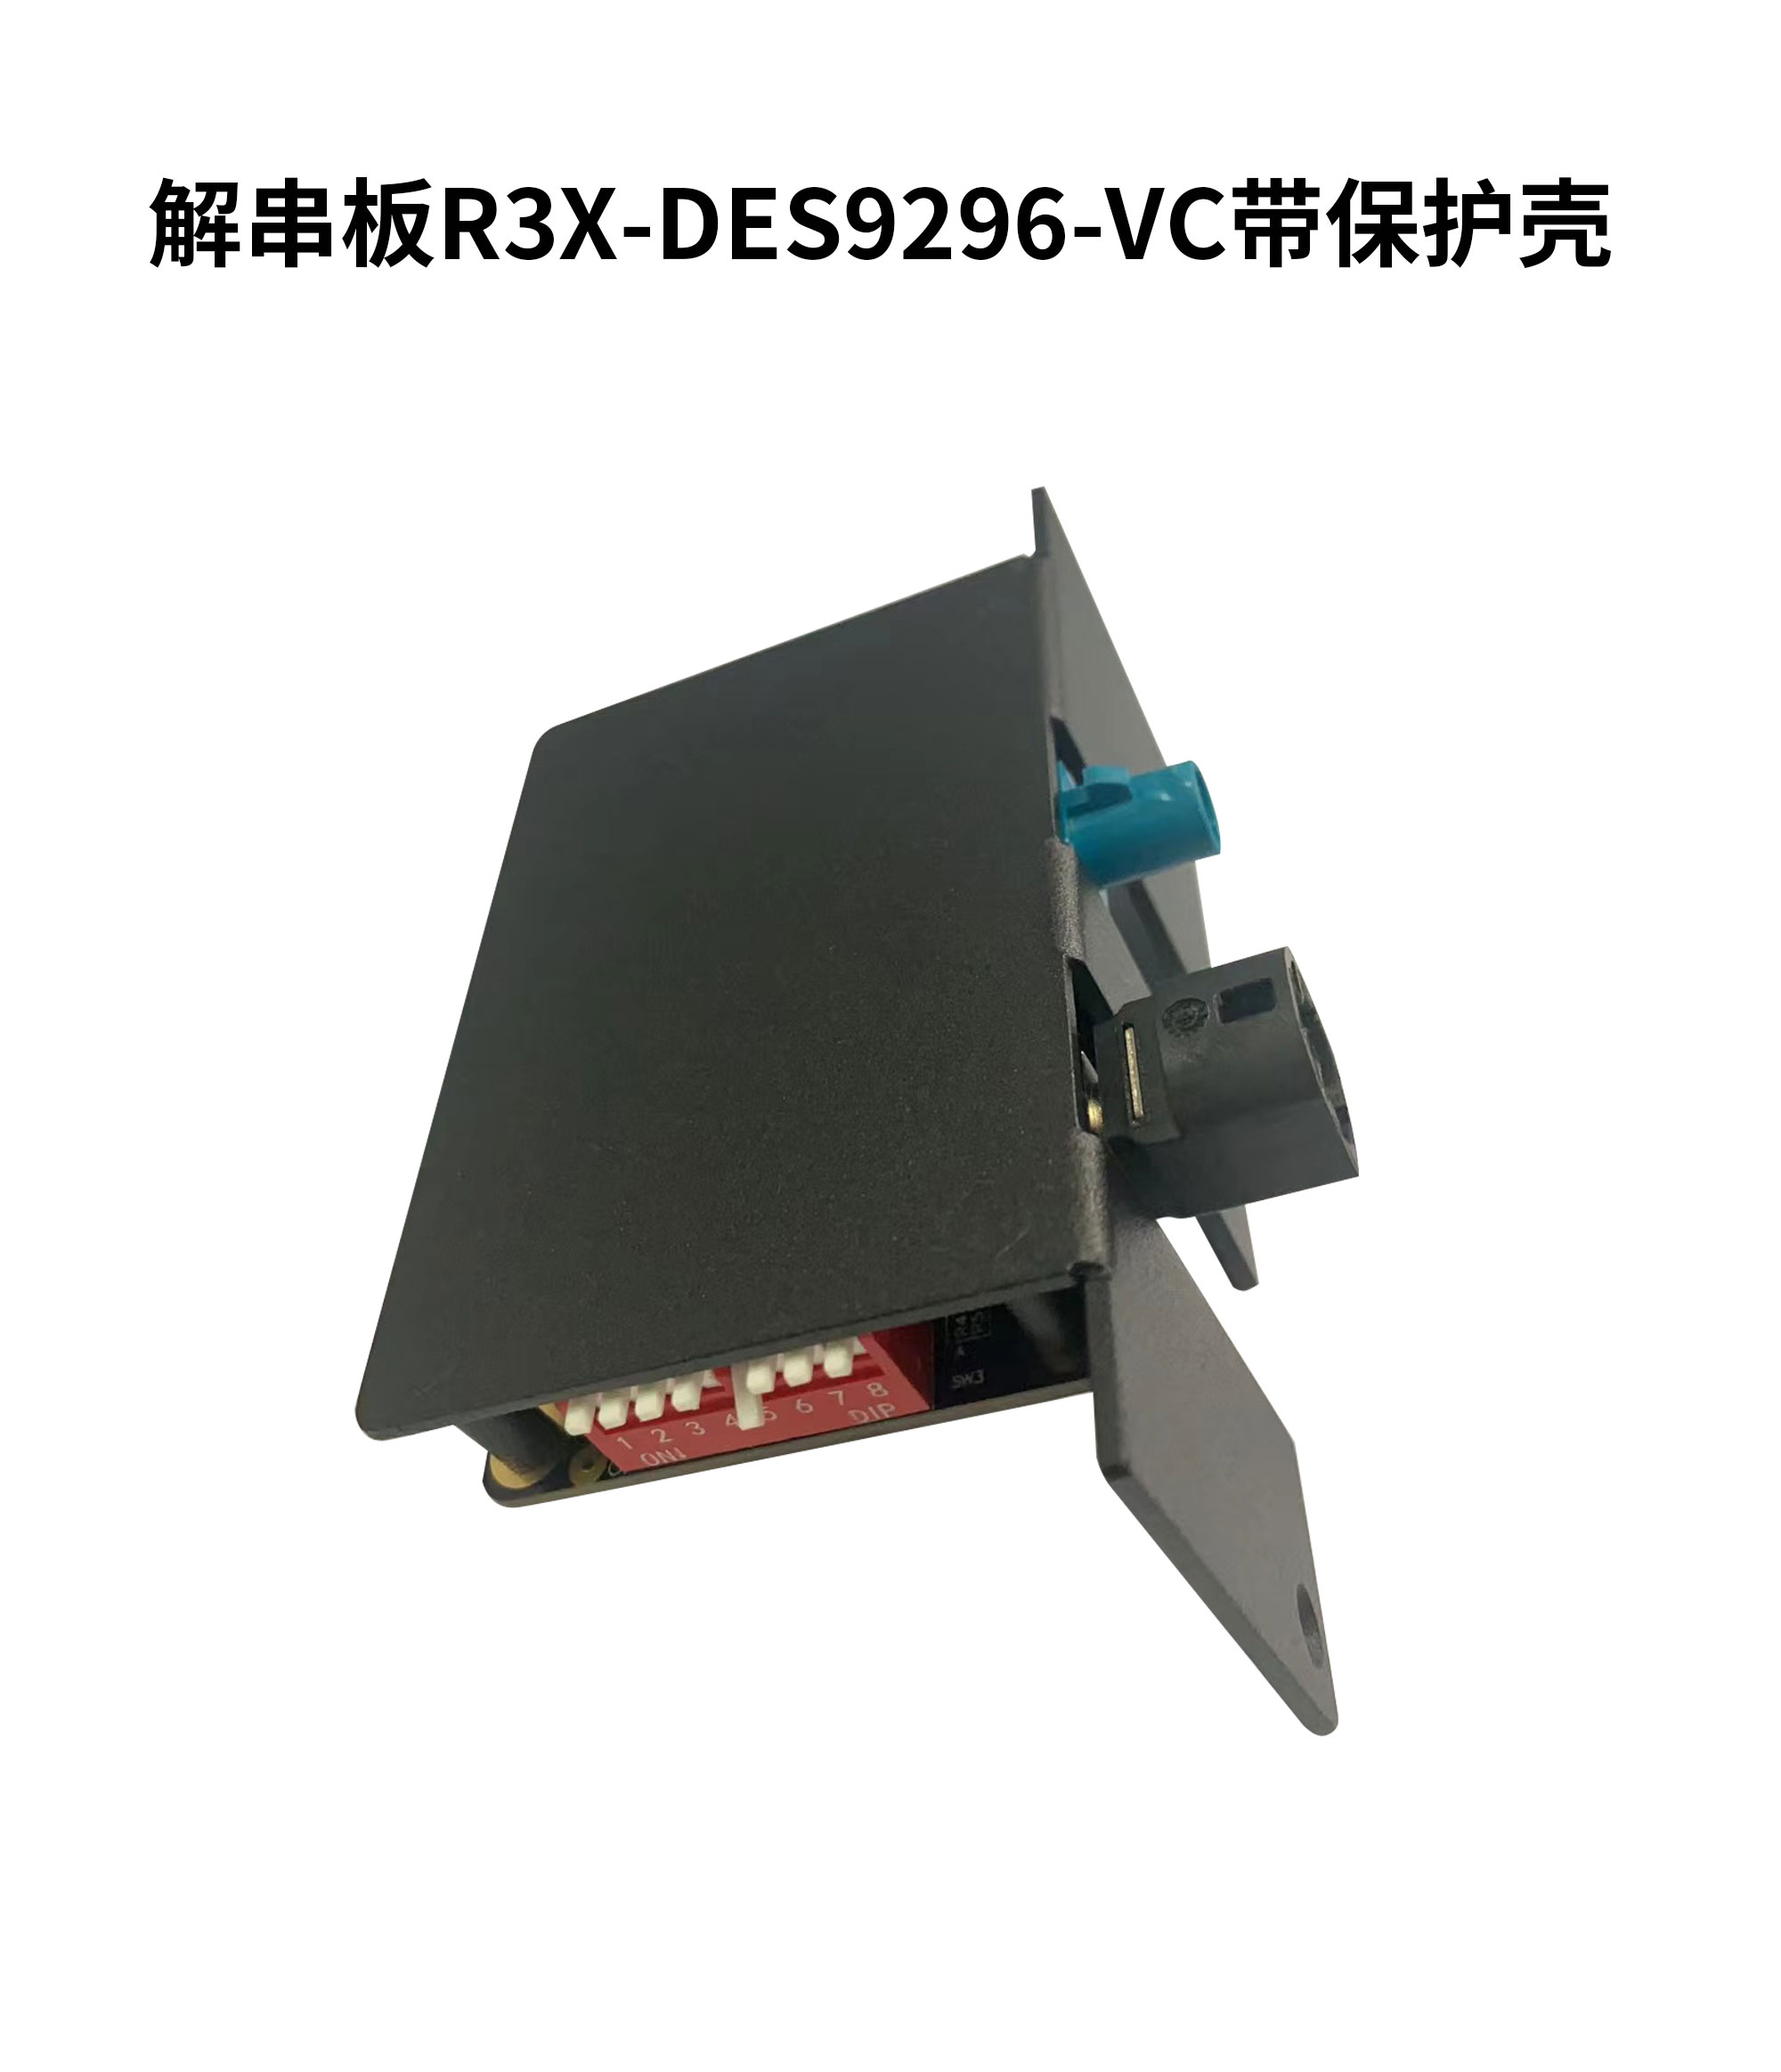 解串板R3X-DES9296-VC带保护壳-白底